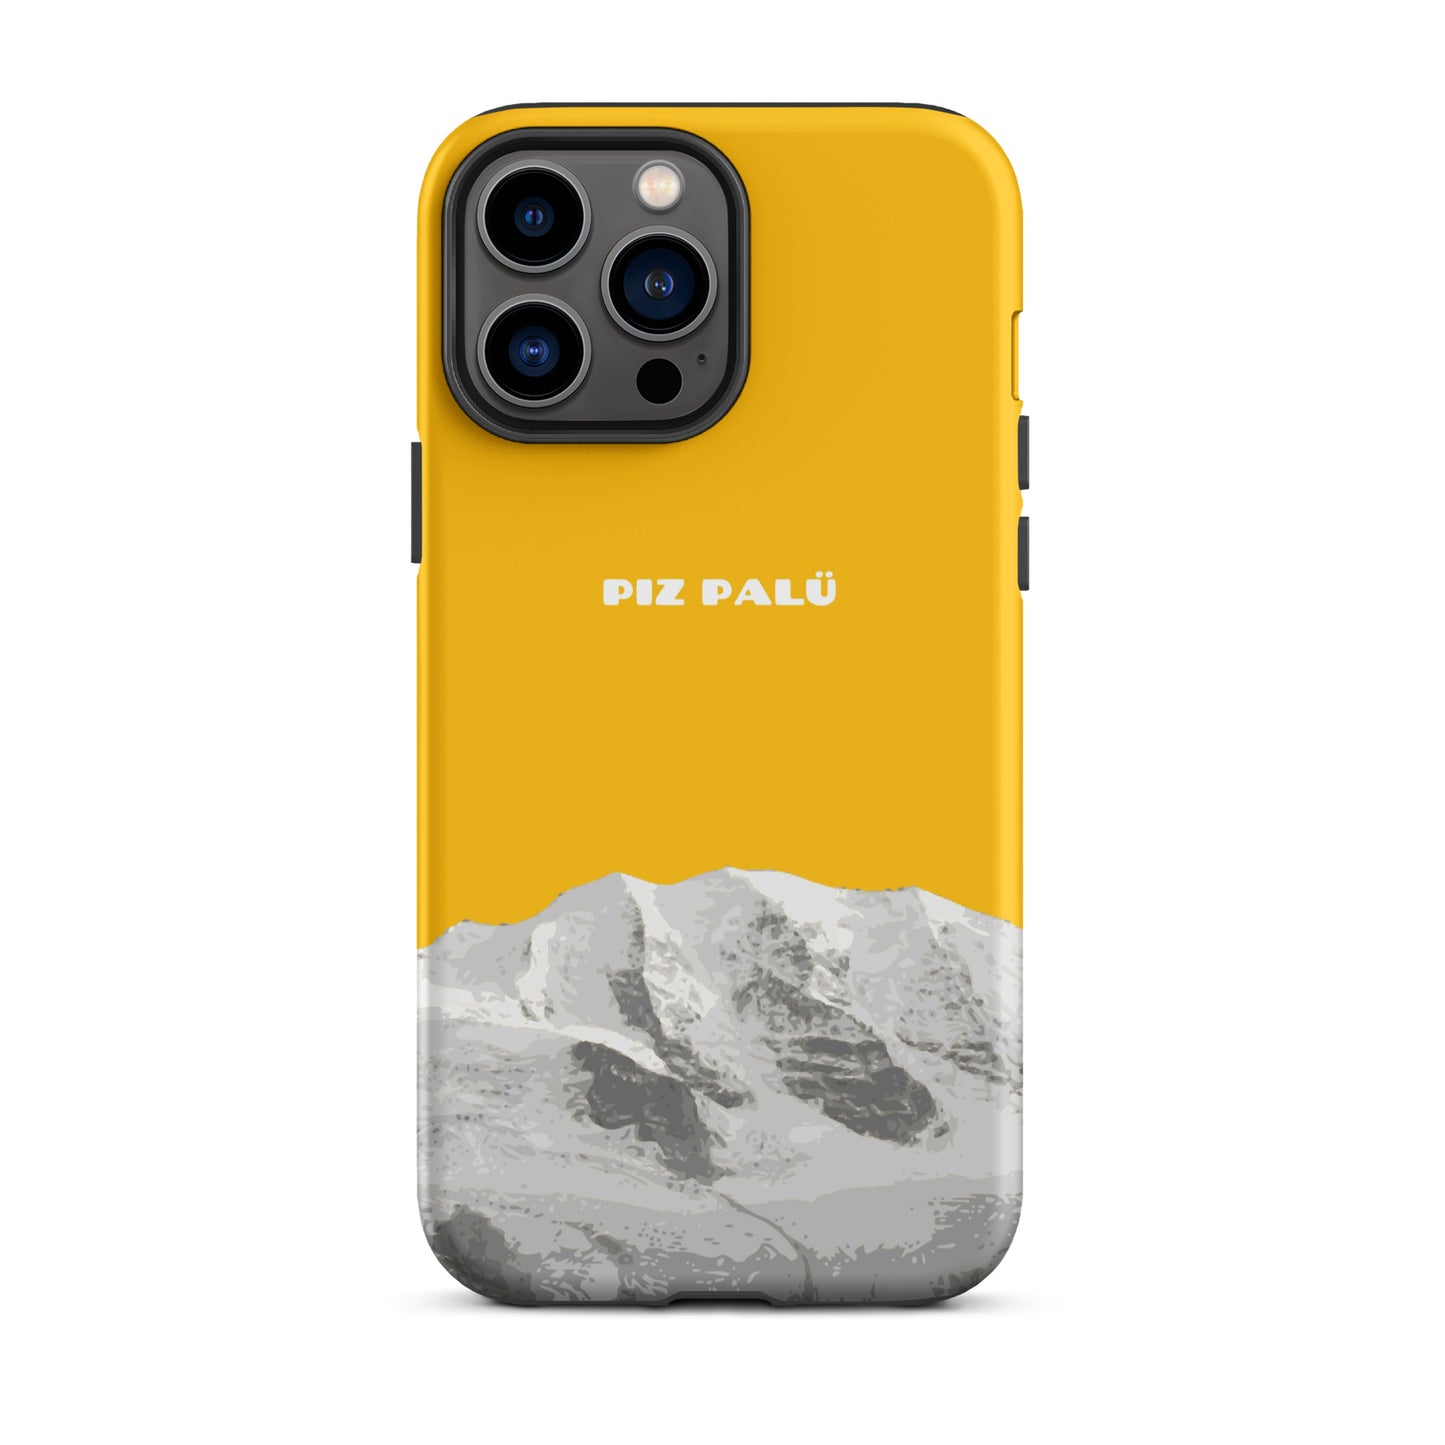 Hülle für das iPhone 13 Pro Max von Apple in der Farbe Goldgelb, dass den Piz Palü in Graubünden zeigt.